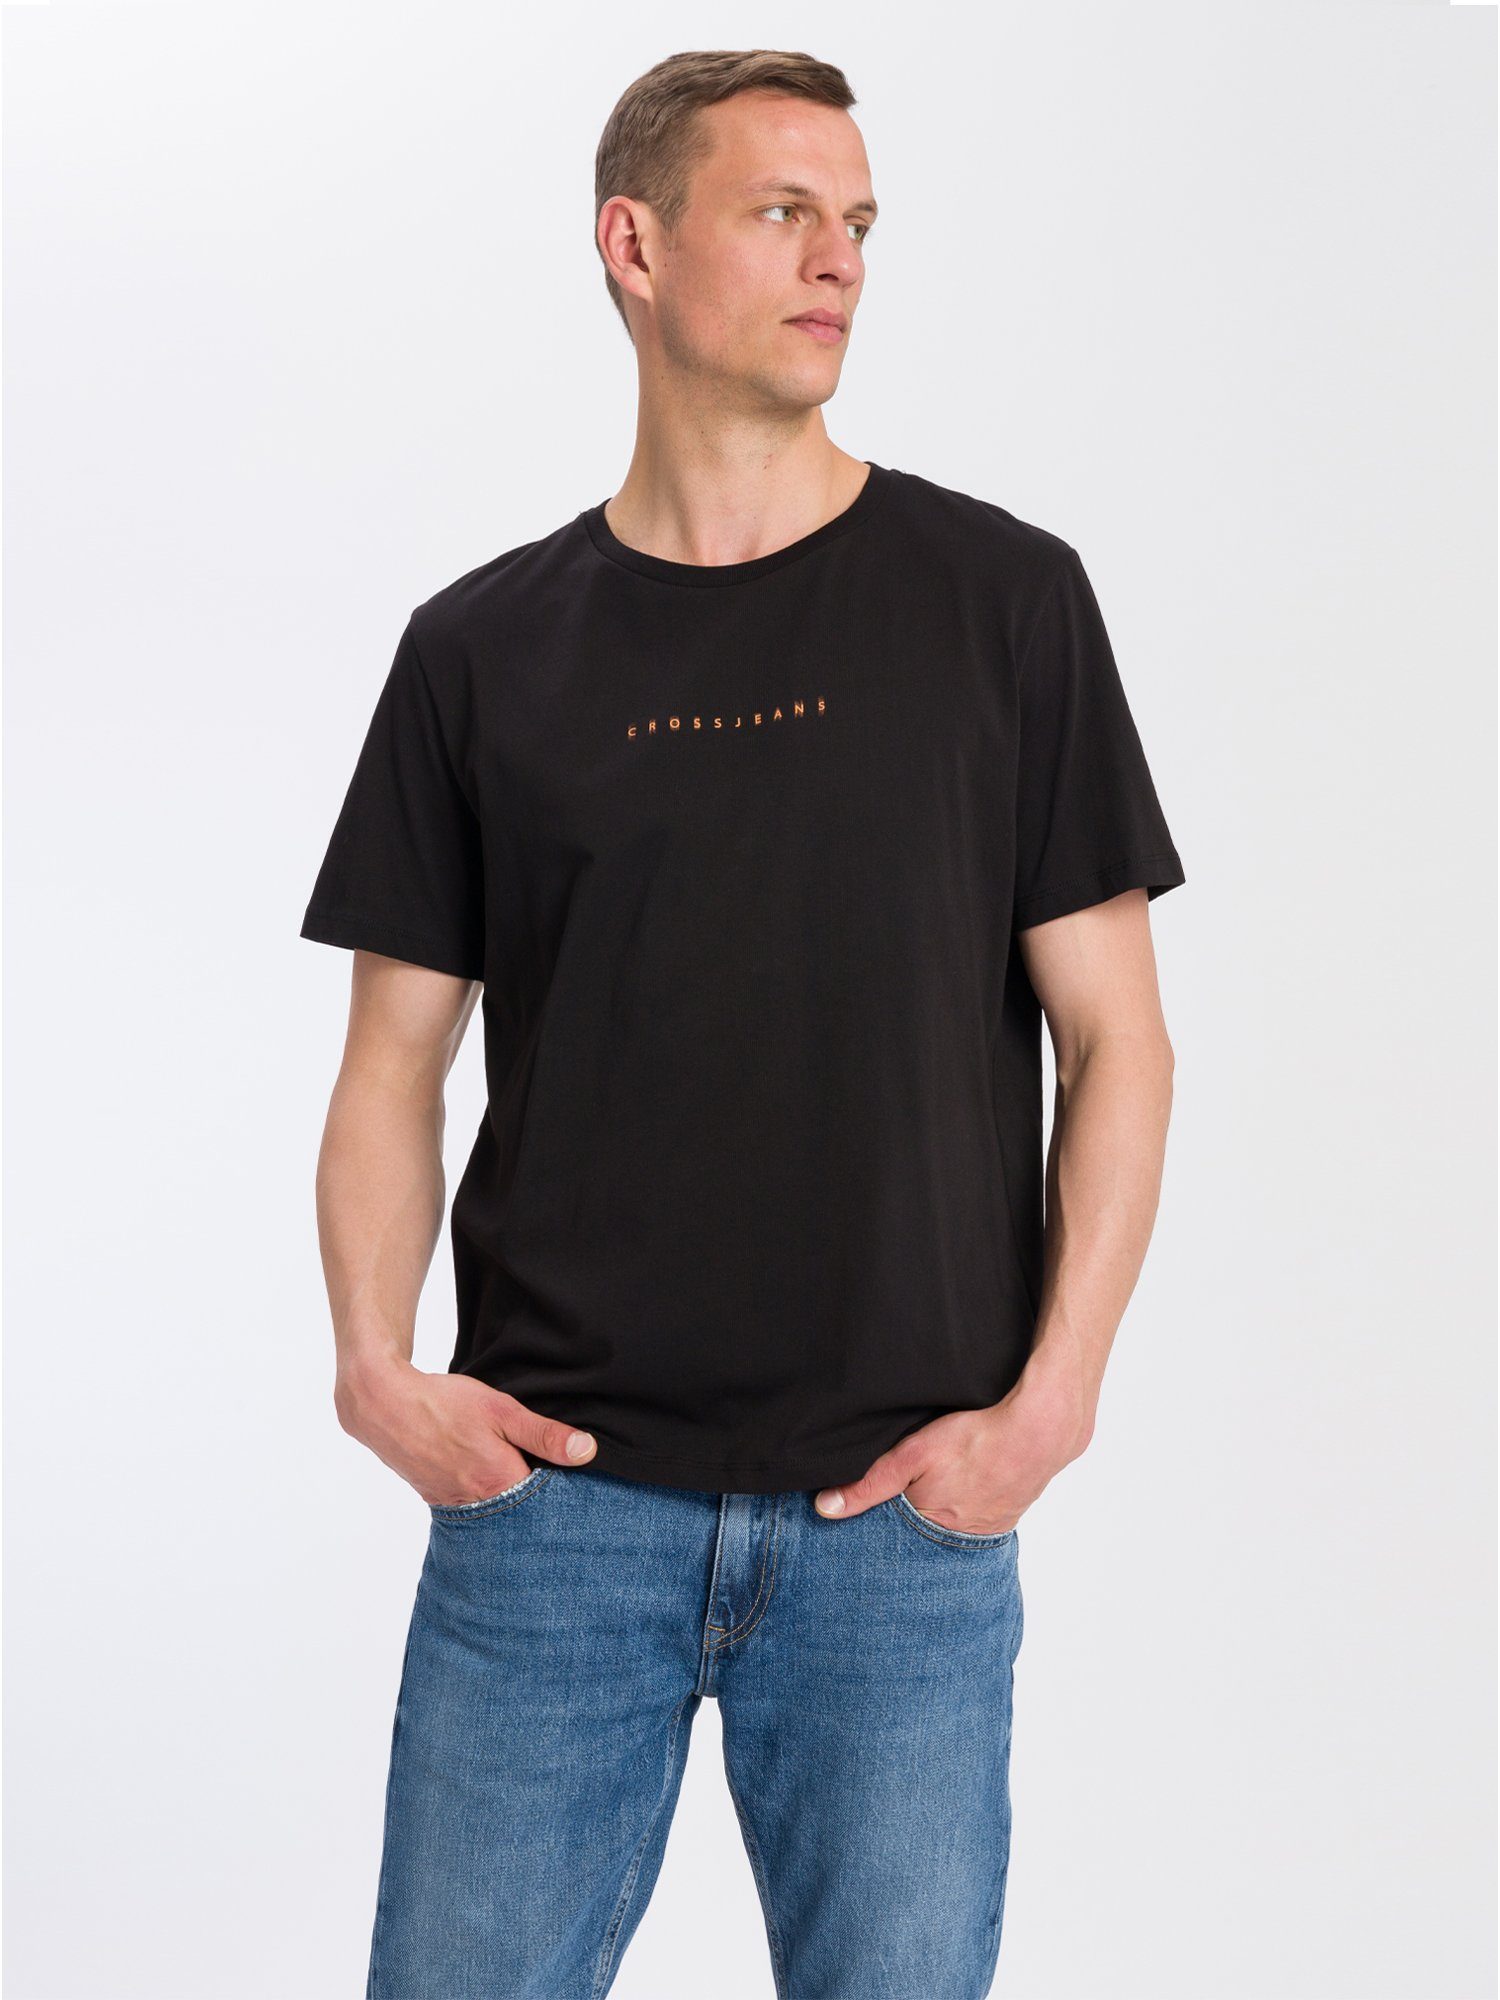 CROSS JEANS® T-Shirt 15851